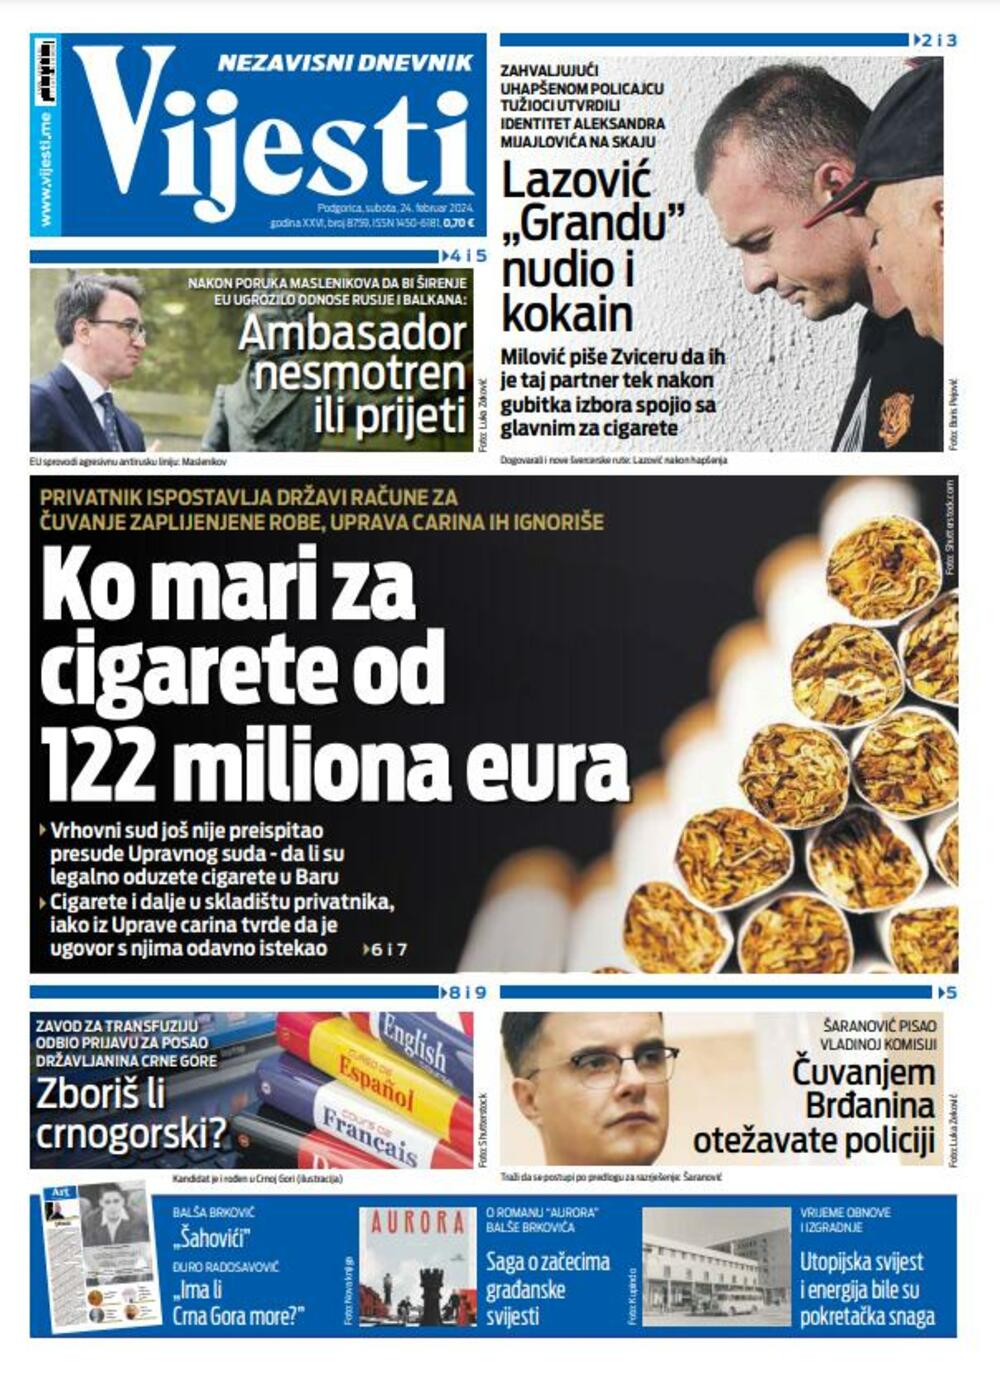 Naslovna strana "Vijesti" za 24. februar 2024., Foto: Vijesti